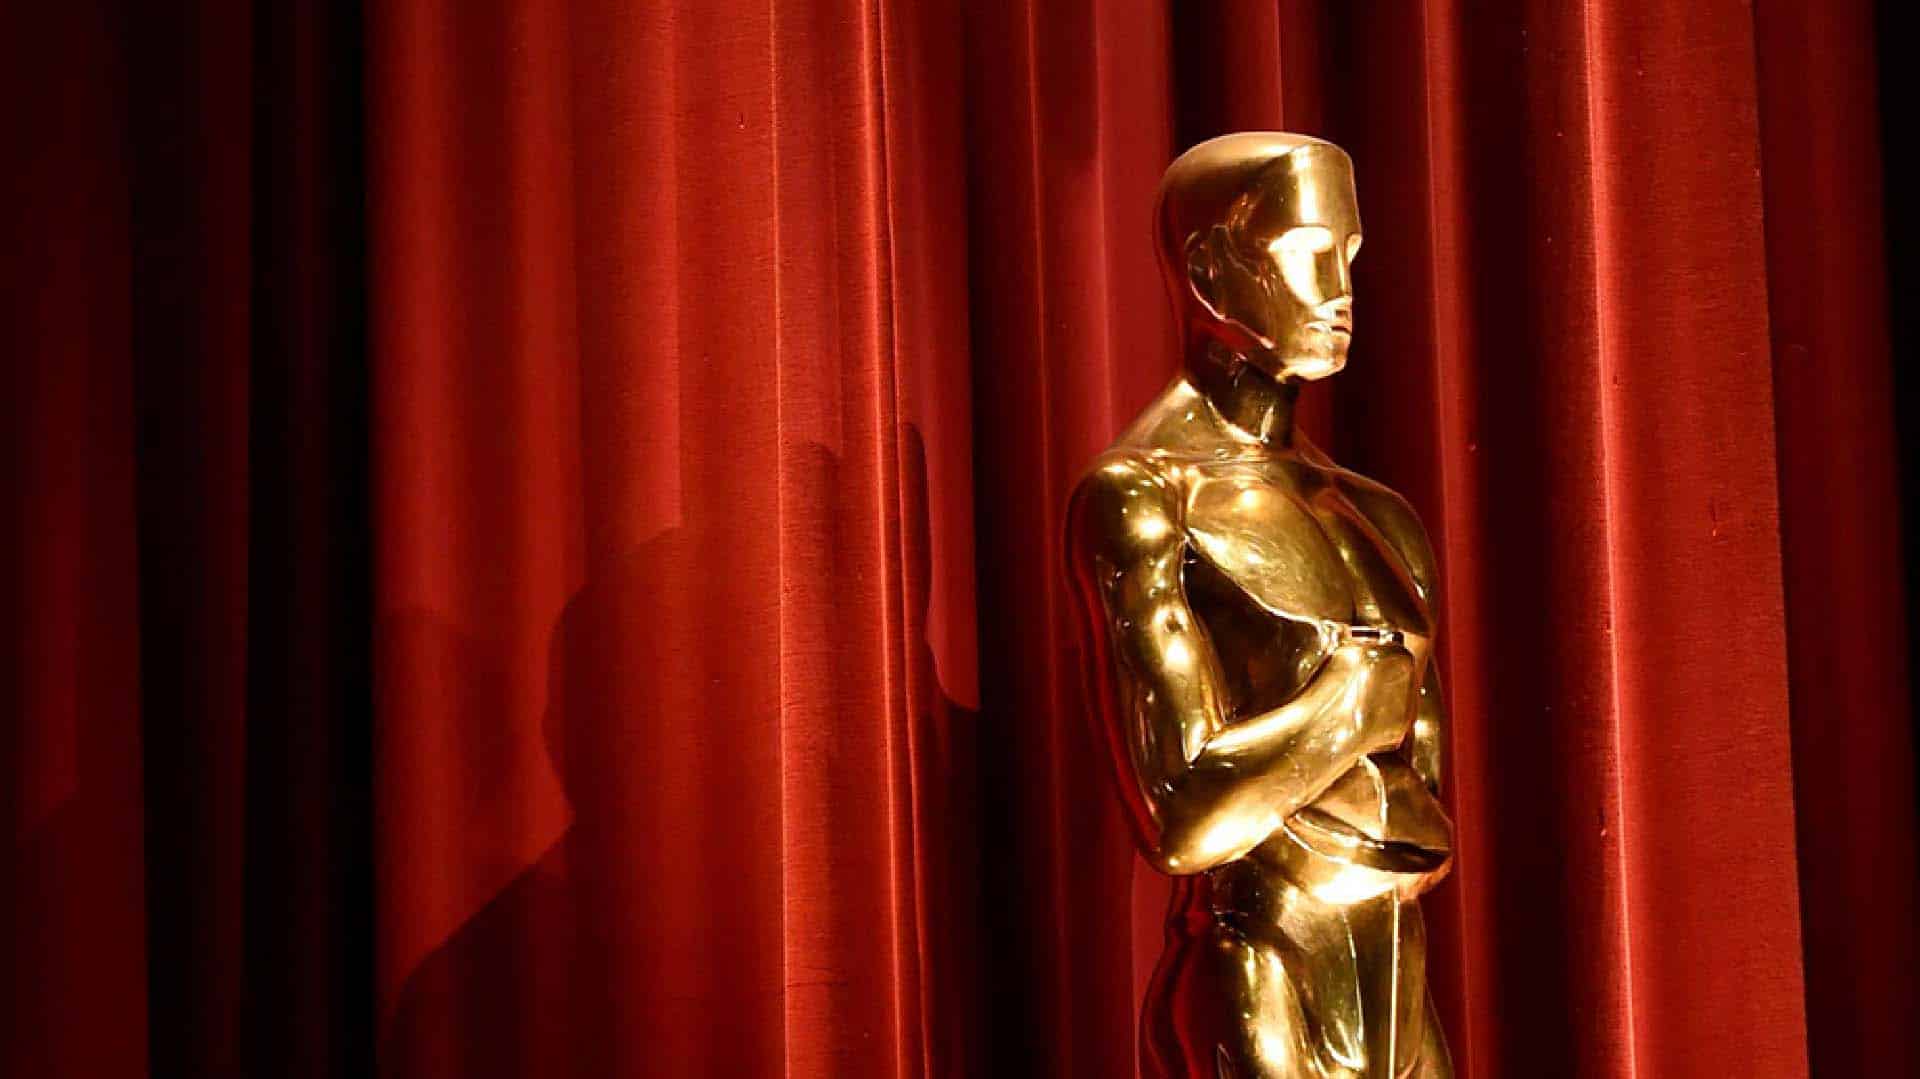 Sky Cinema Oscar 2020: un canale per seguire la diretta e vedere i film premiati